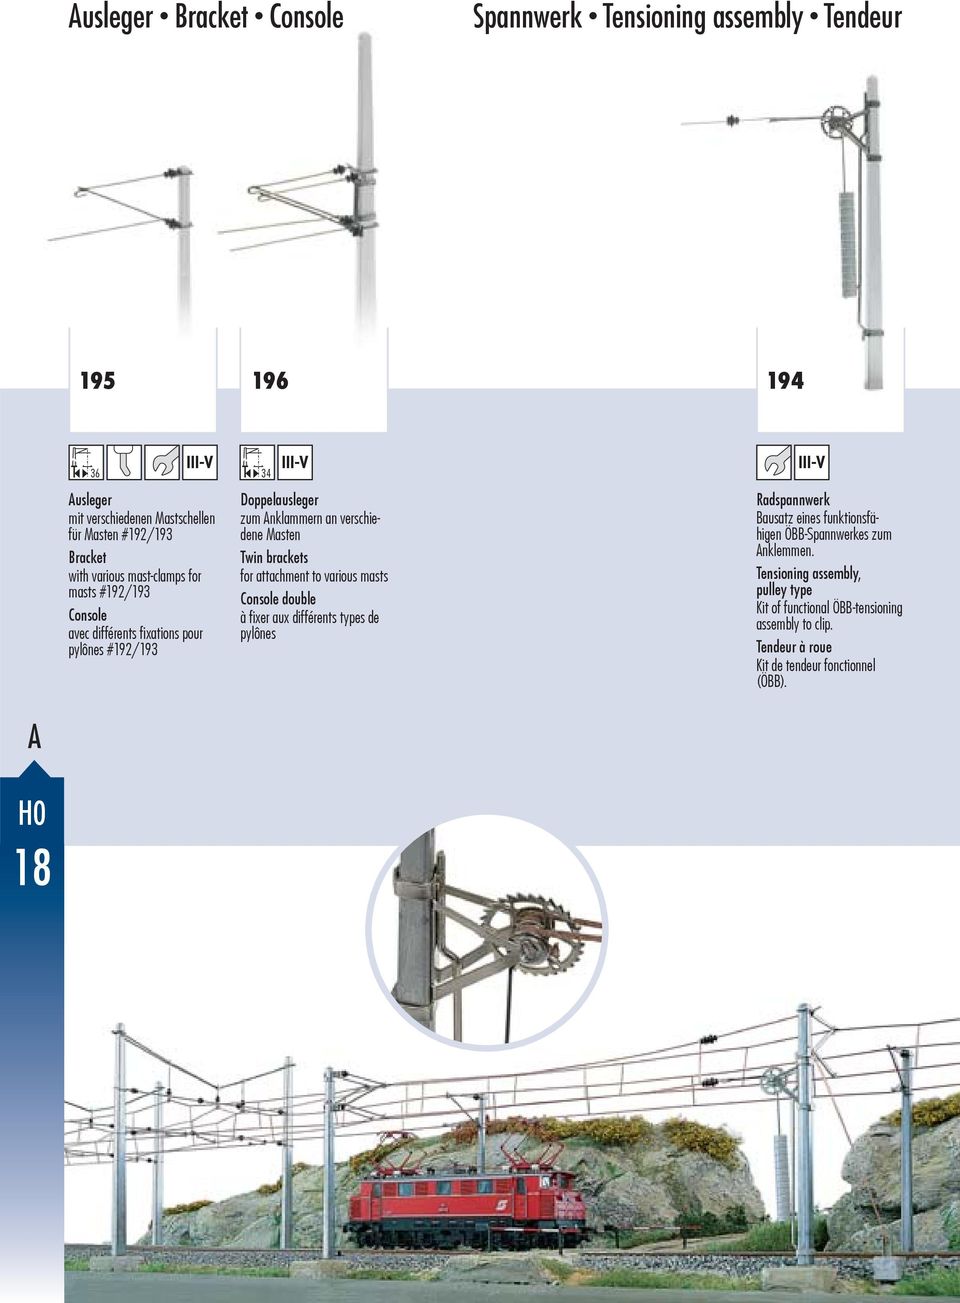 brackets for attachment to various masts Console double à fi xer aux différents types de pylônes Radspannwerk Bausatz eines funktionsfähigen